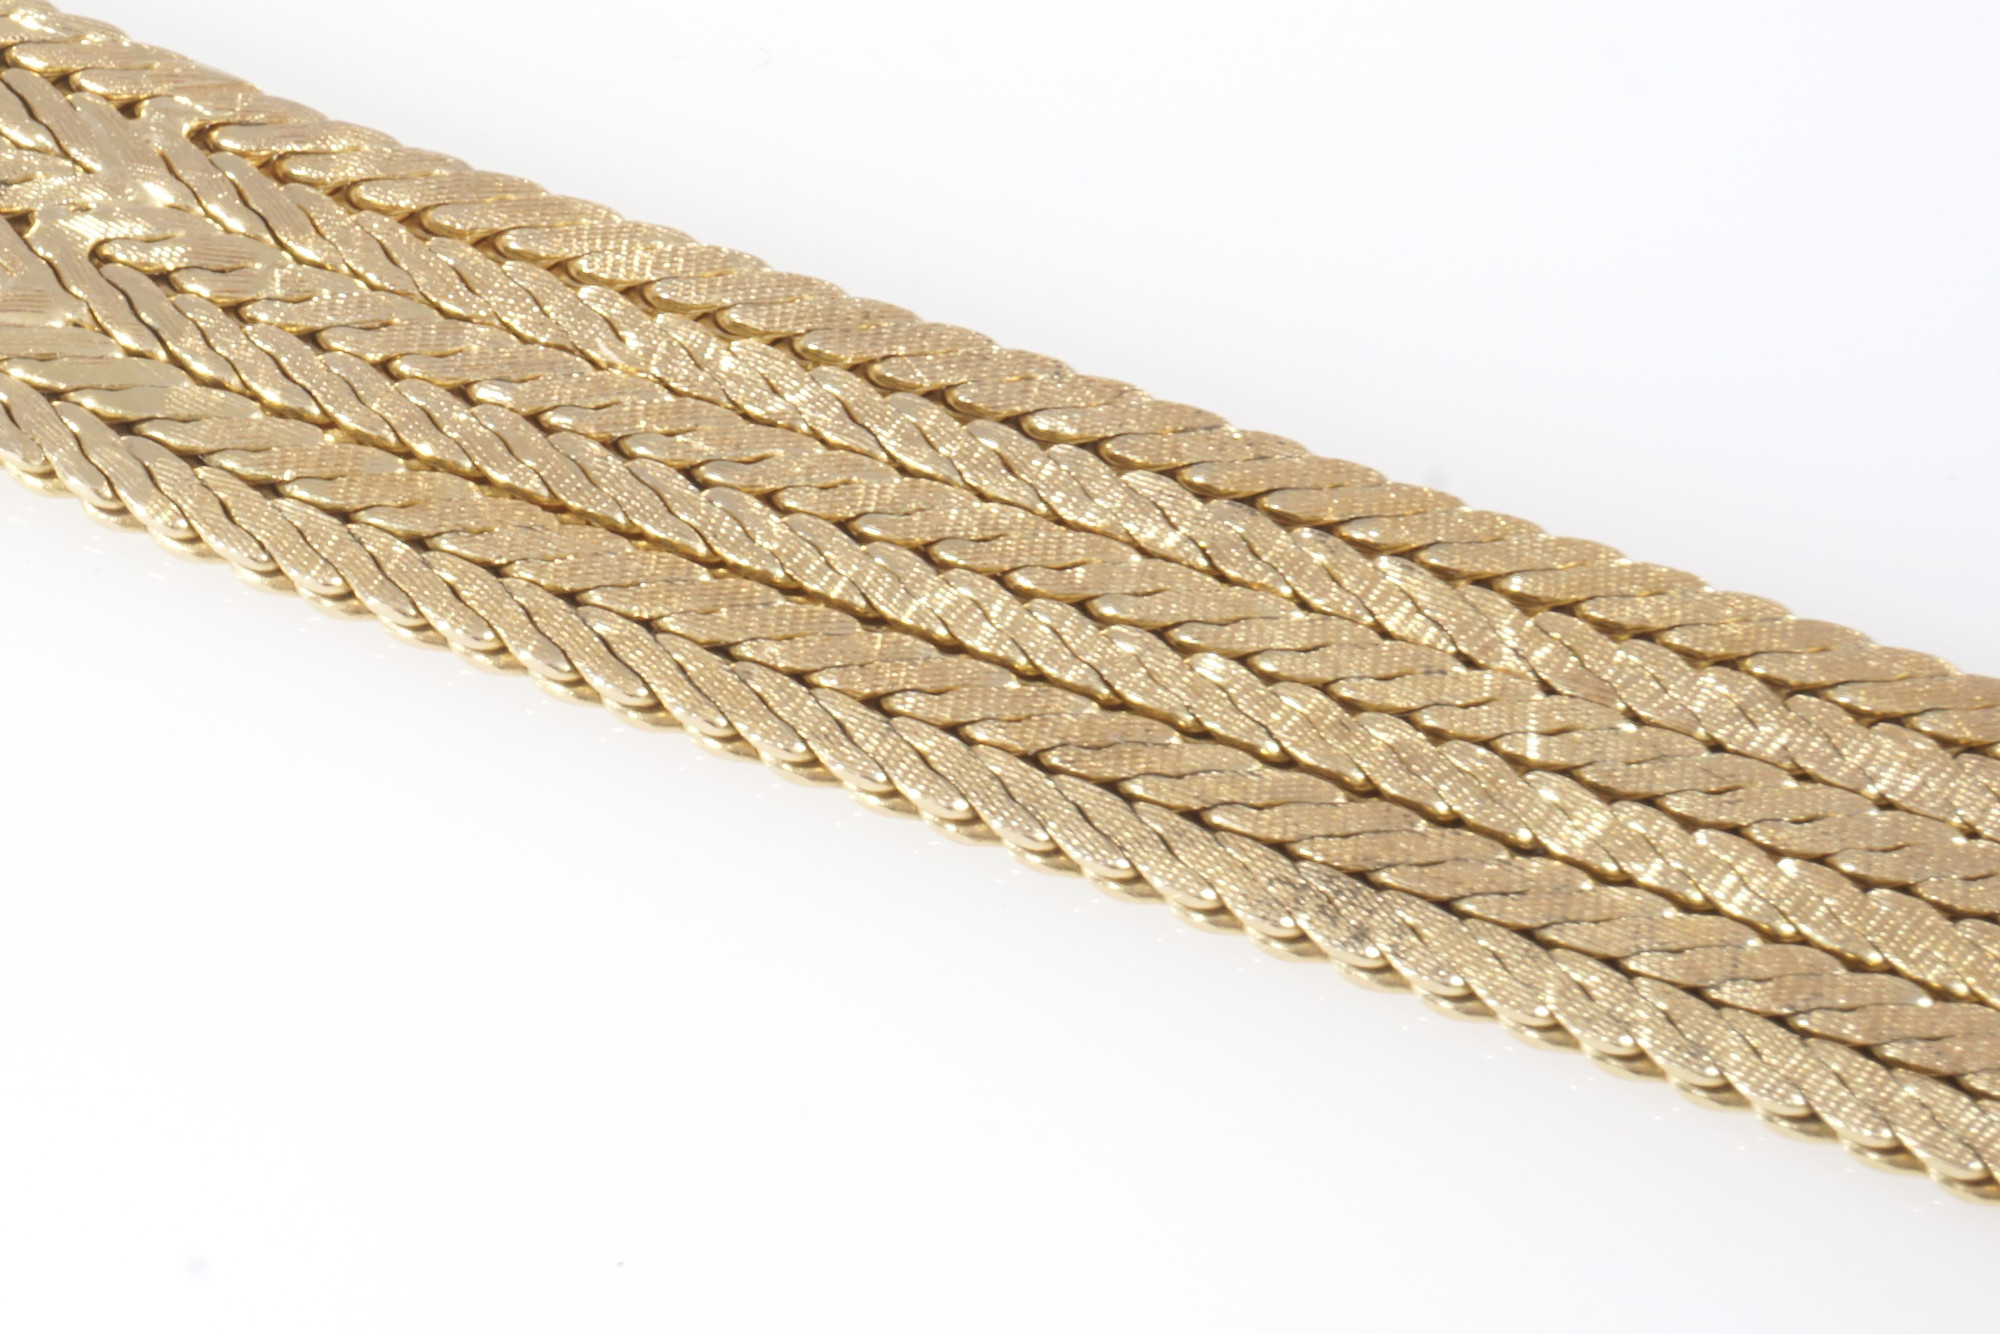 750 six-rowed gold bracelet, 18K Gold sechsreihige Armband, - Image 4 of 5